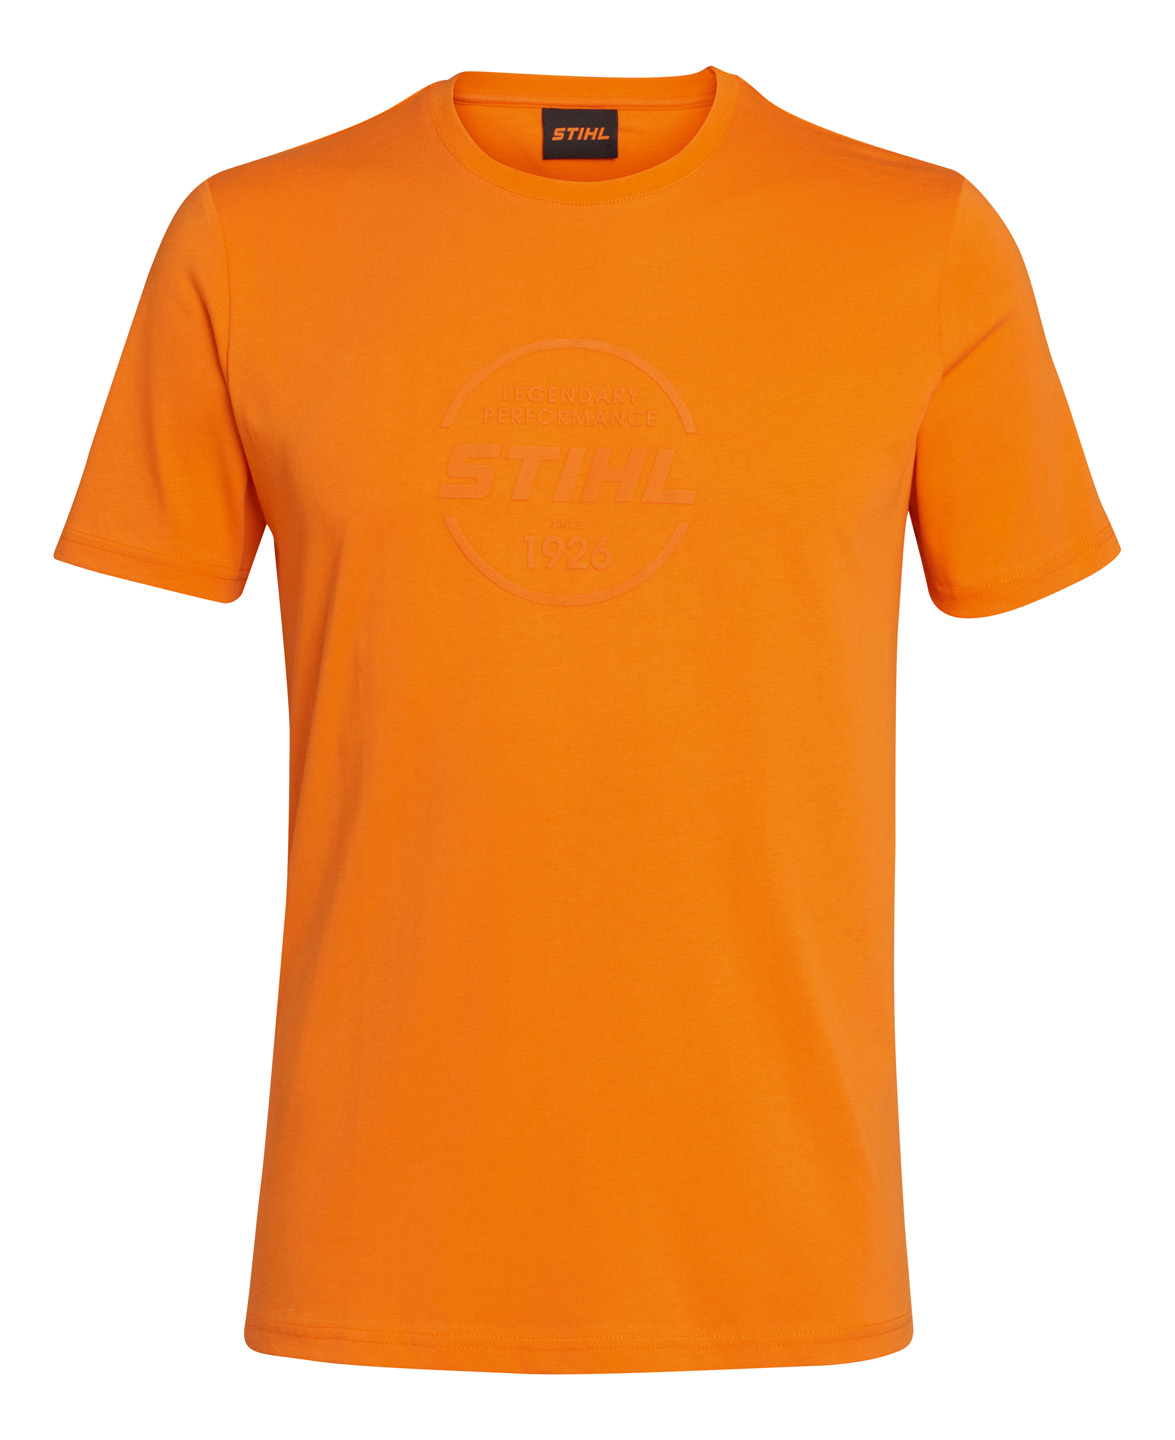 T-shirt LOGO CIRCLE oranje